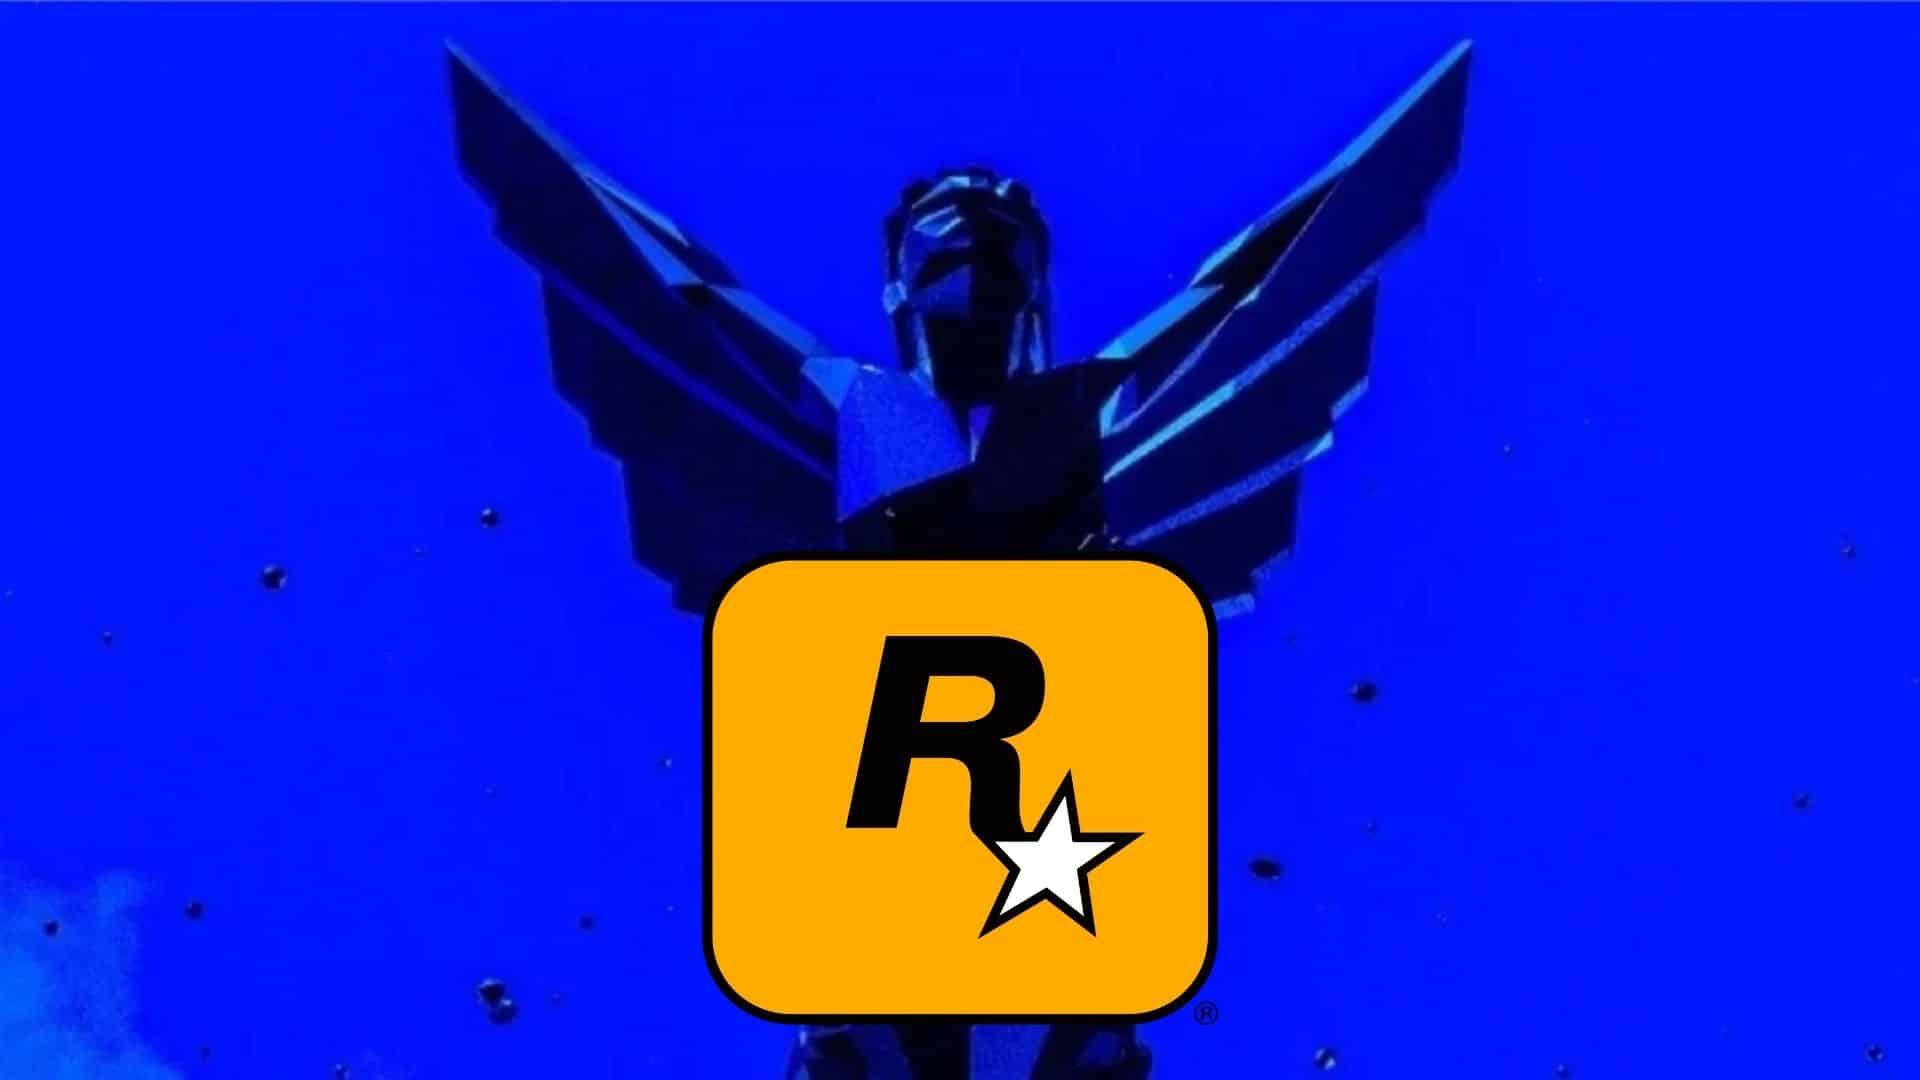 rockstar logo on game awards trophy